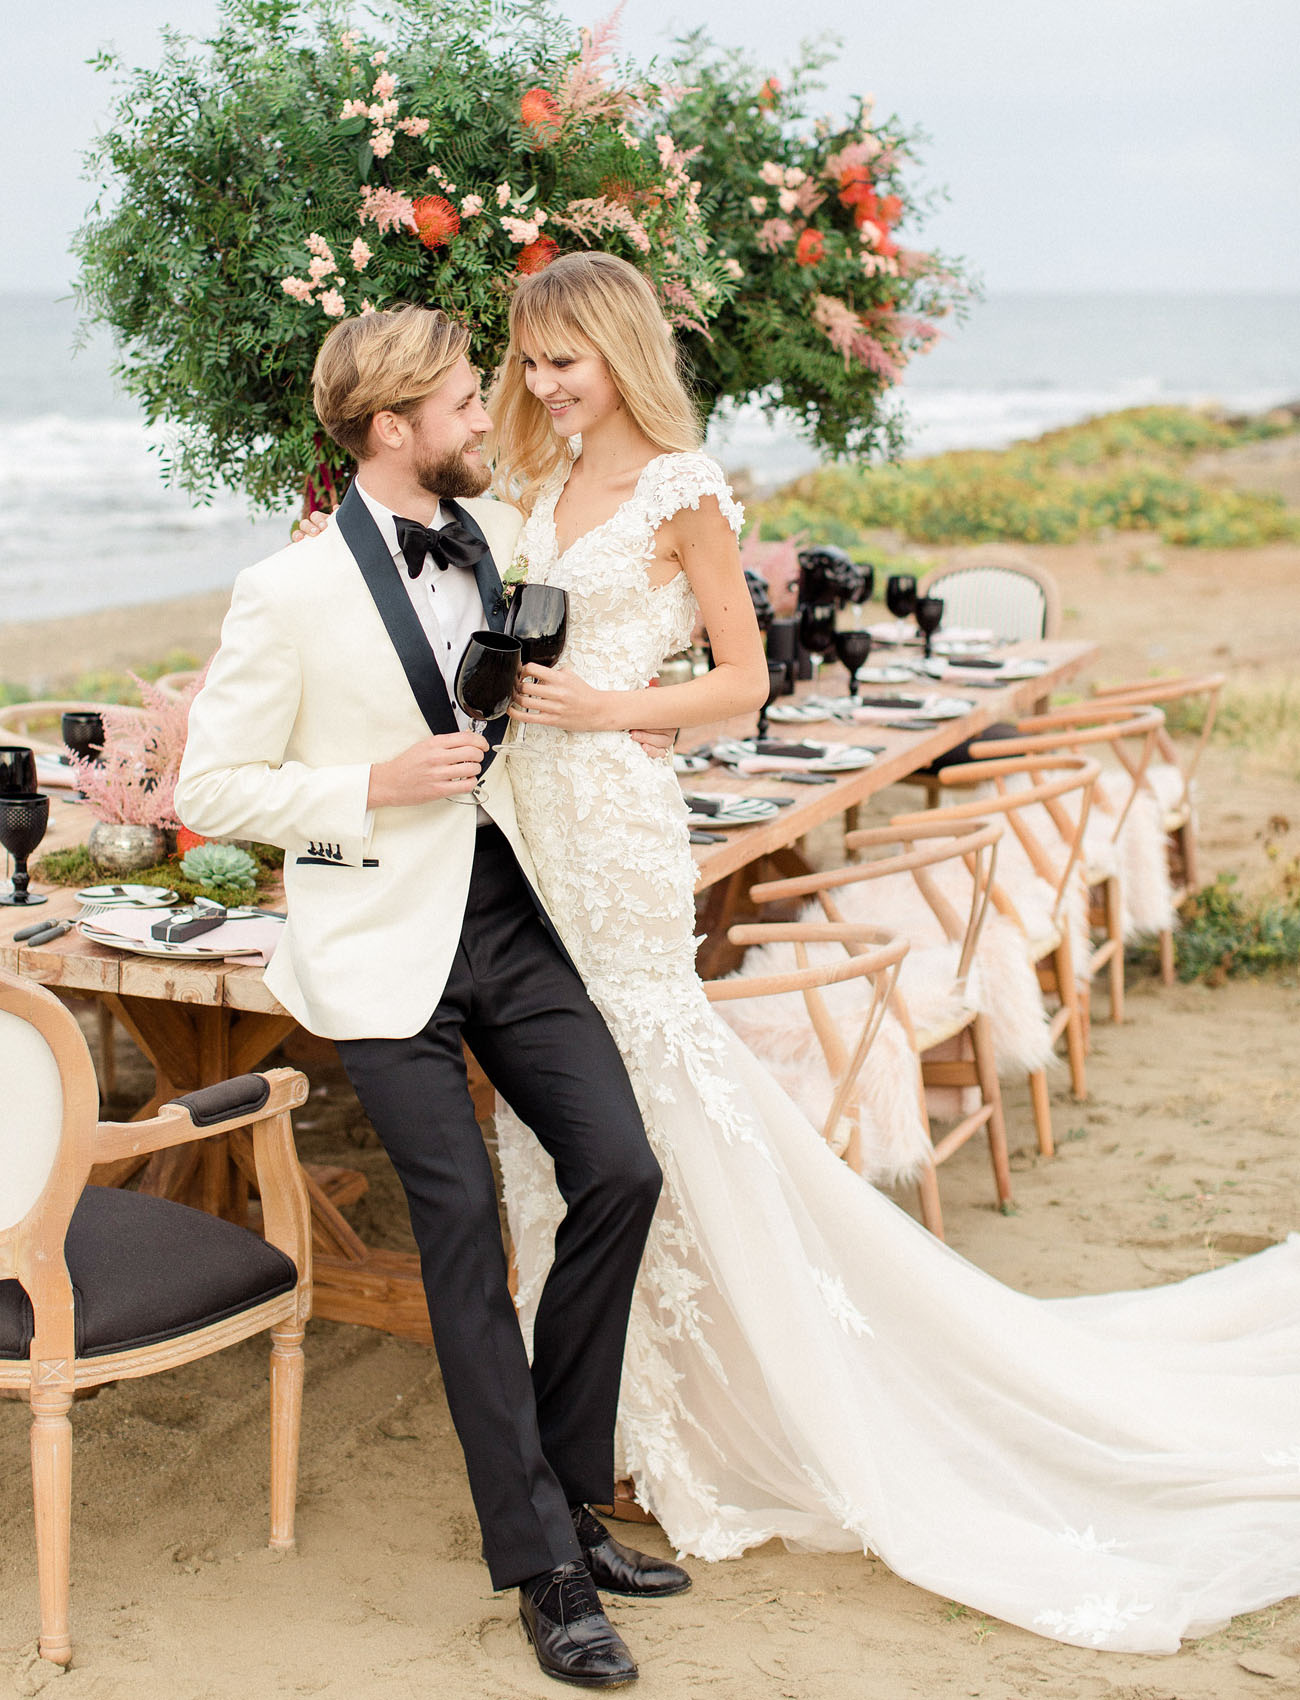 Boho Beach Crete Wedding Inspiration